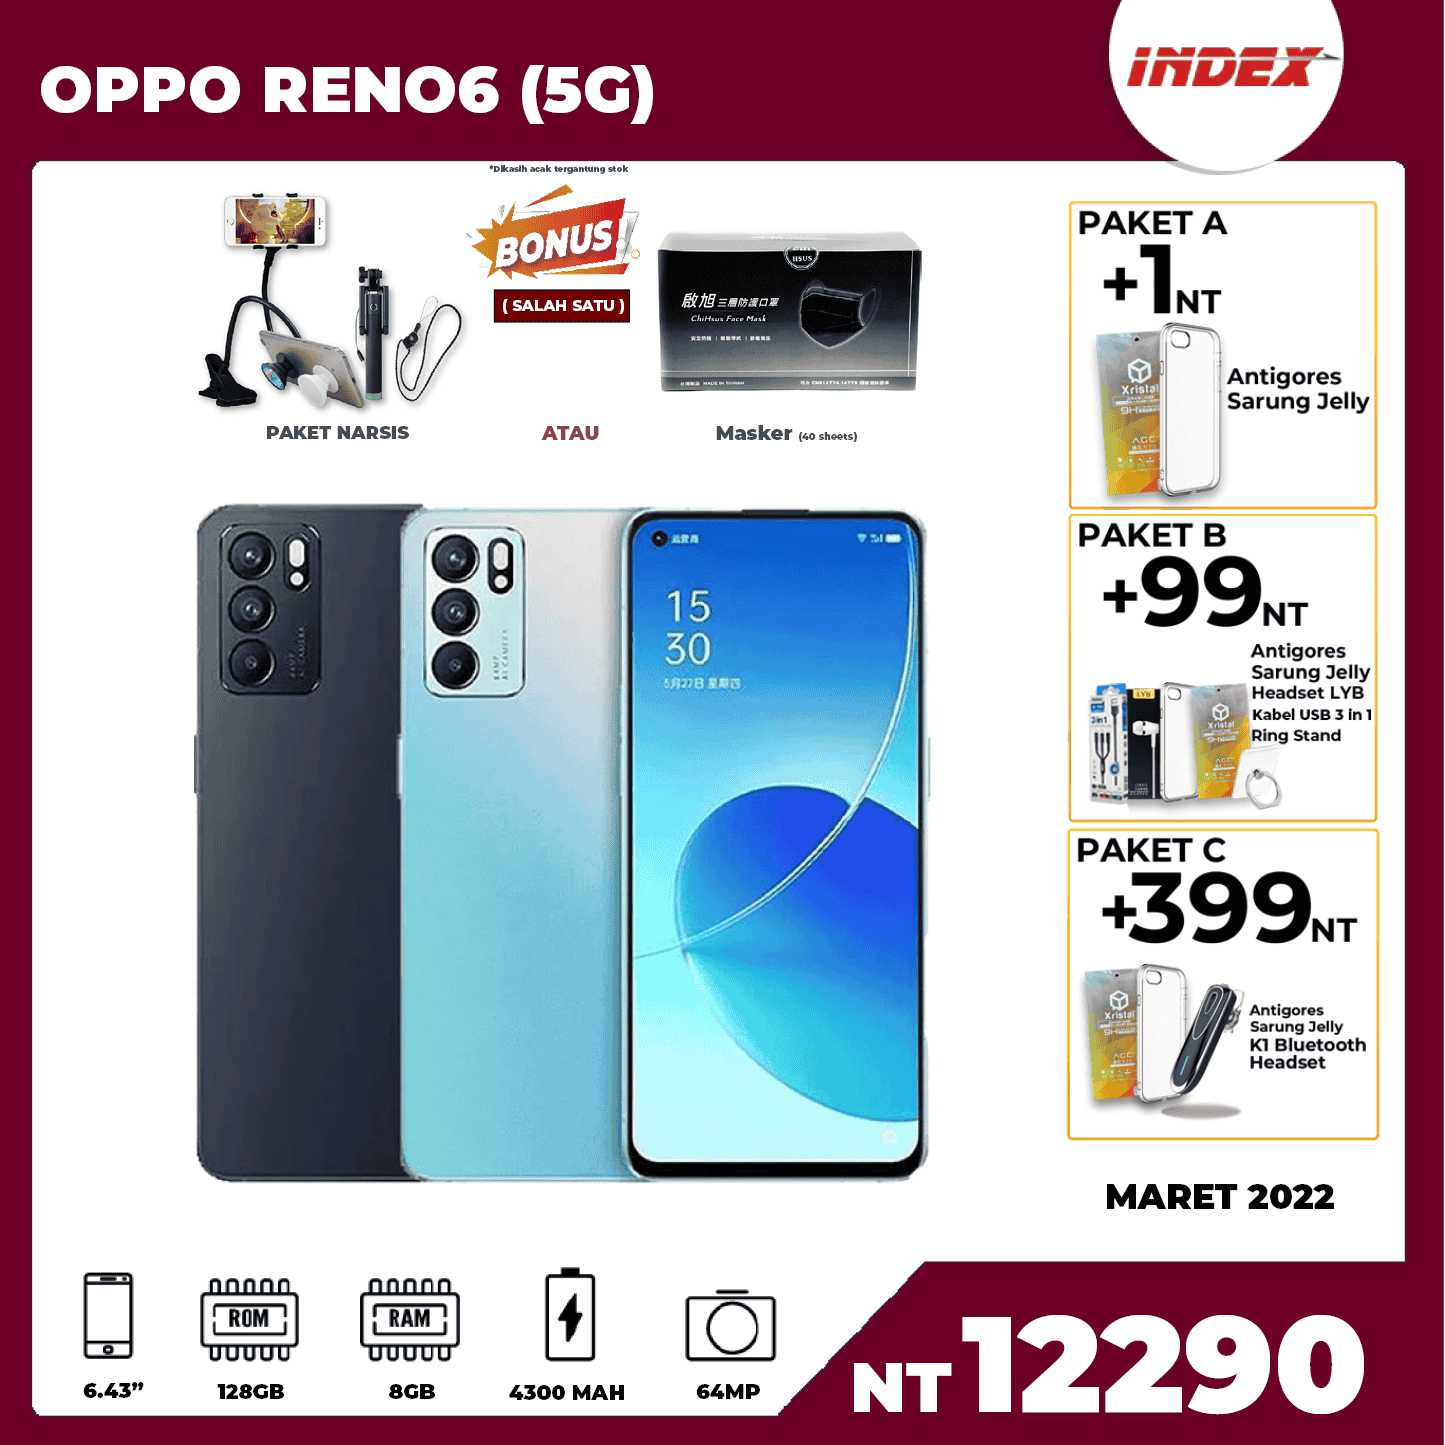 OPPO RENO6 (5G)